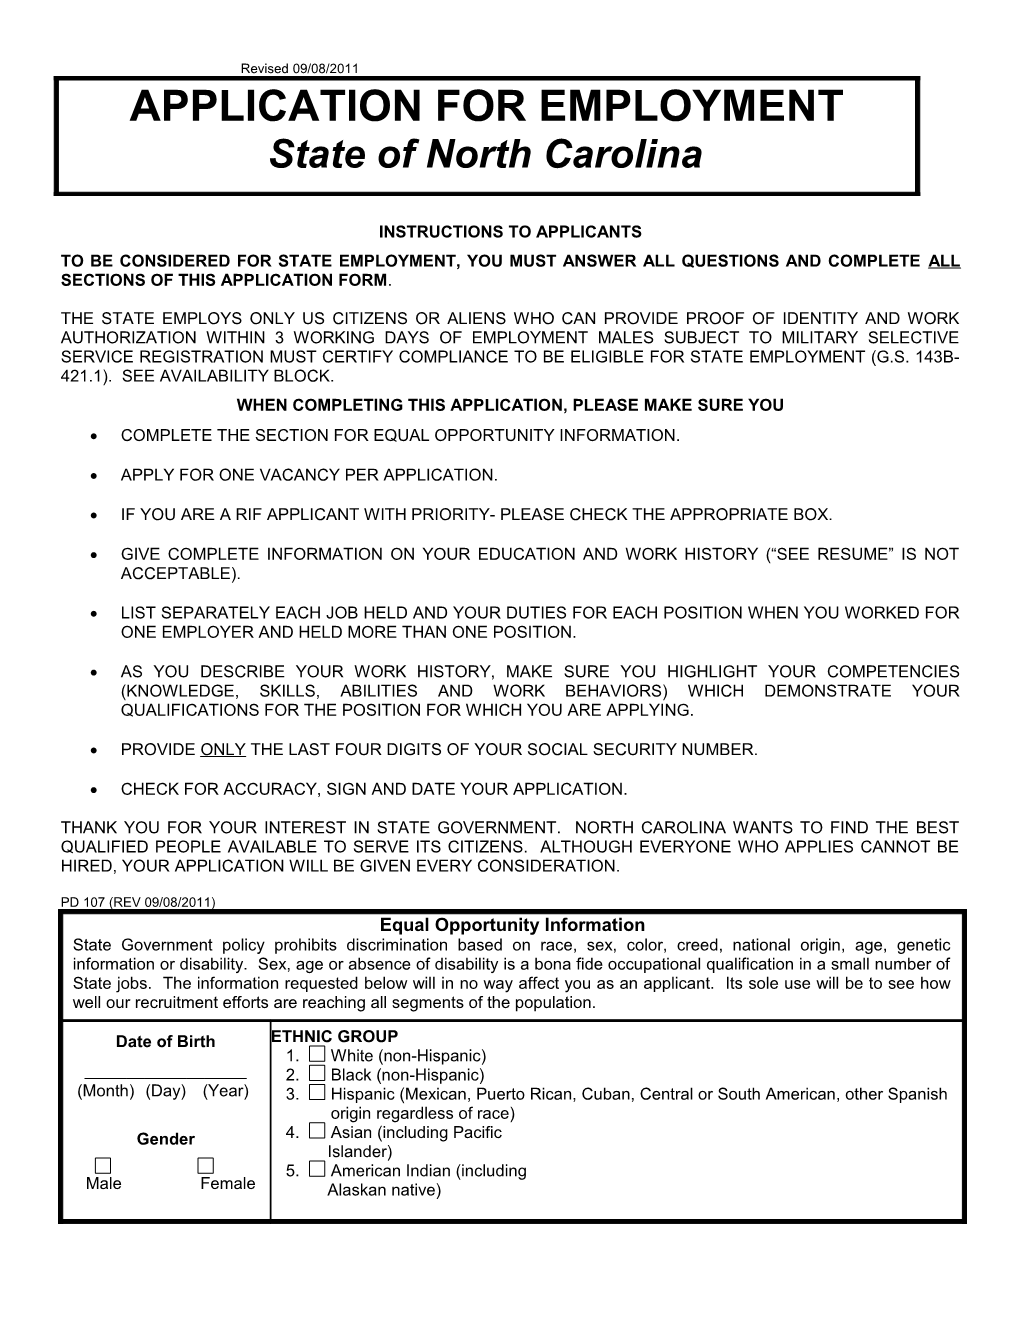 State of North Carolina s19